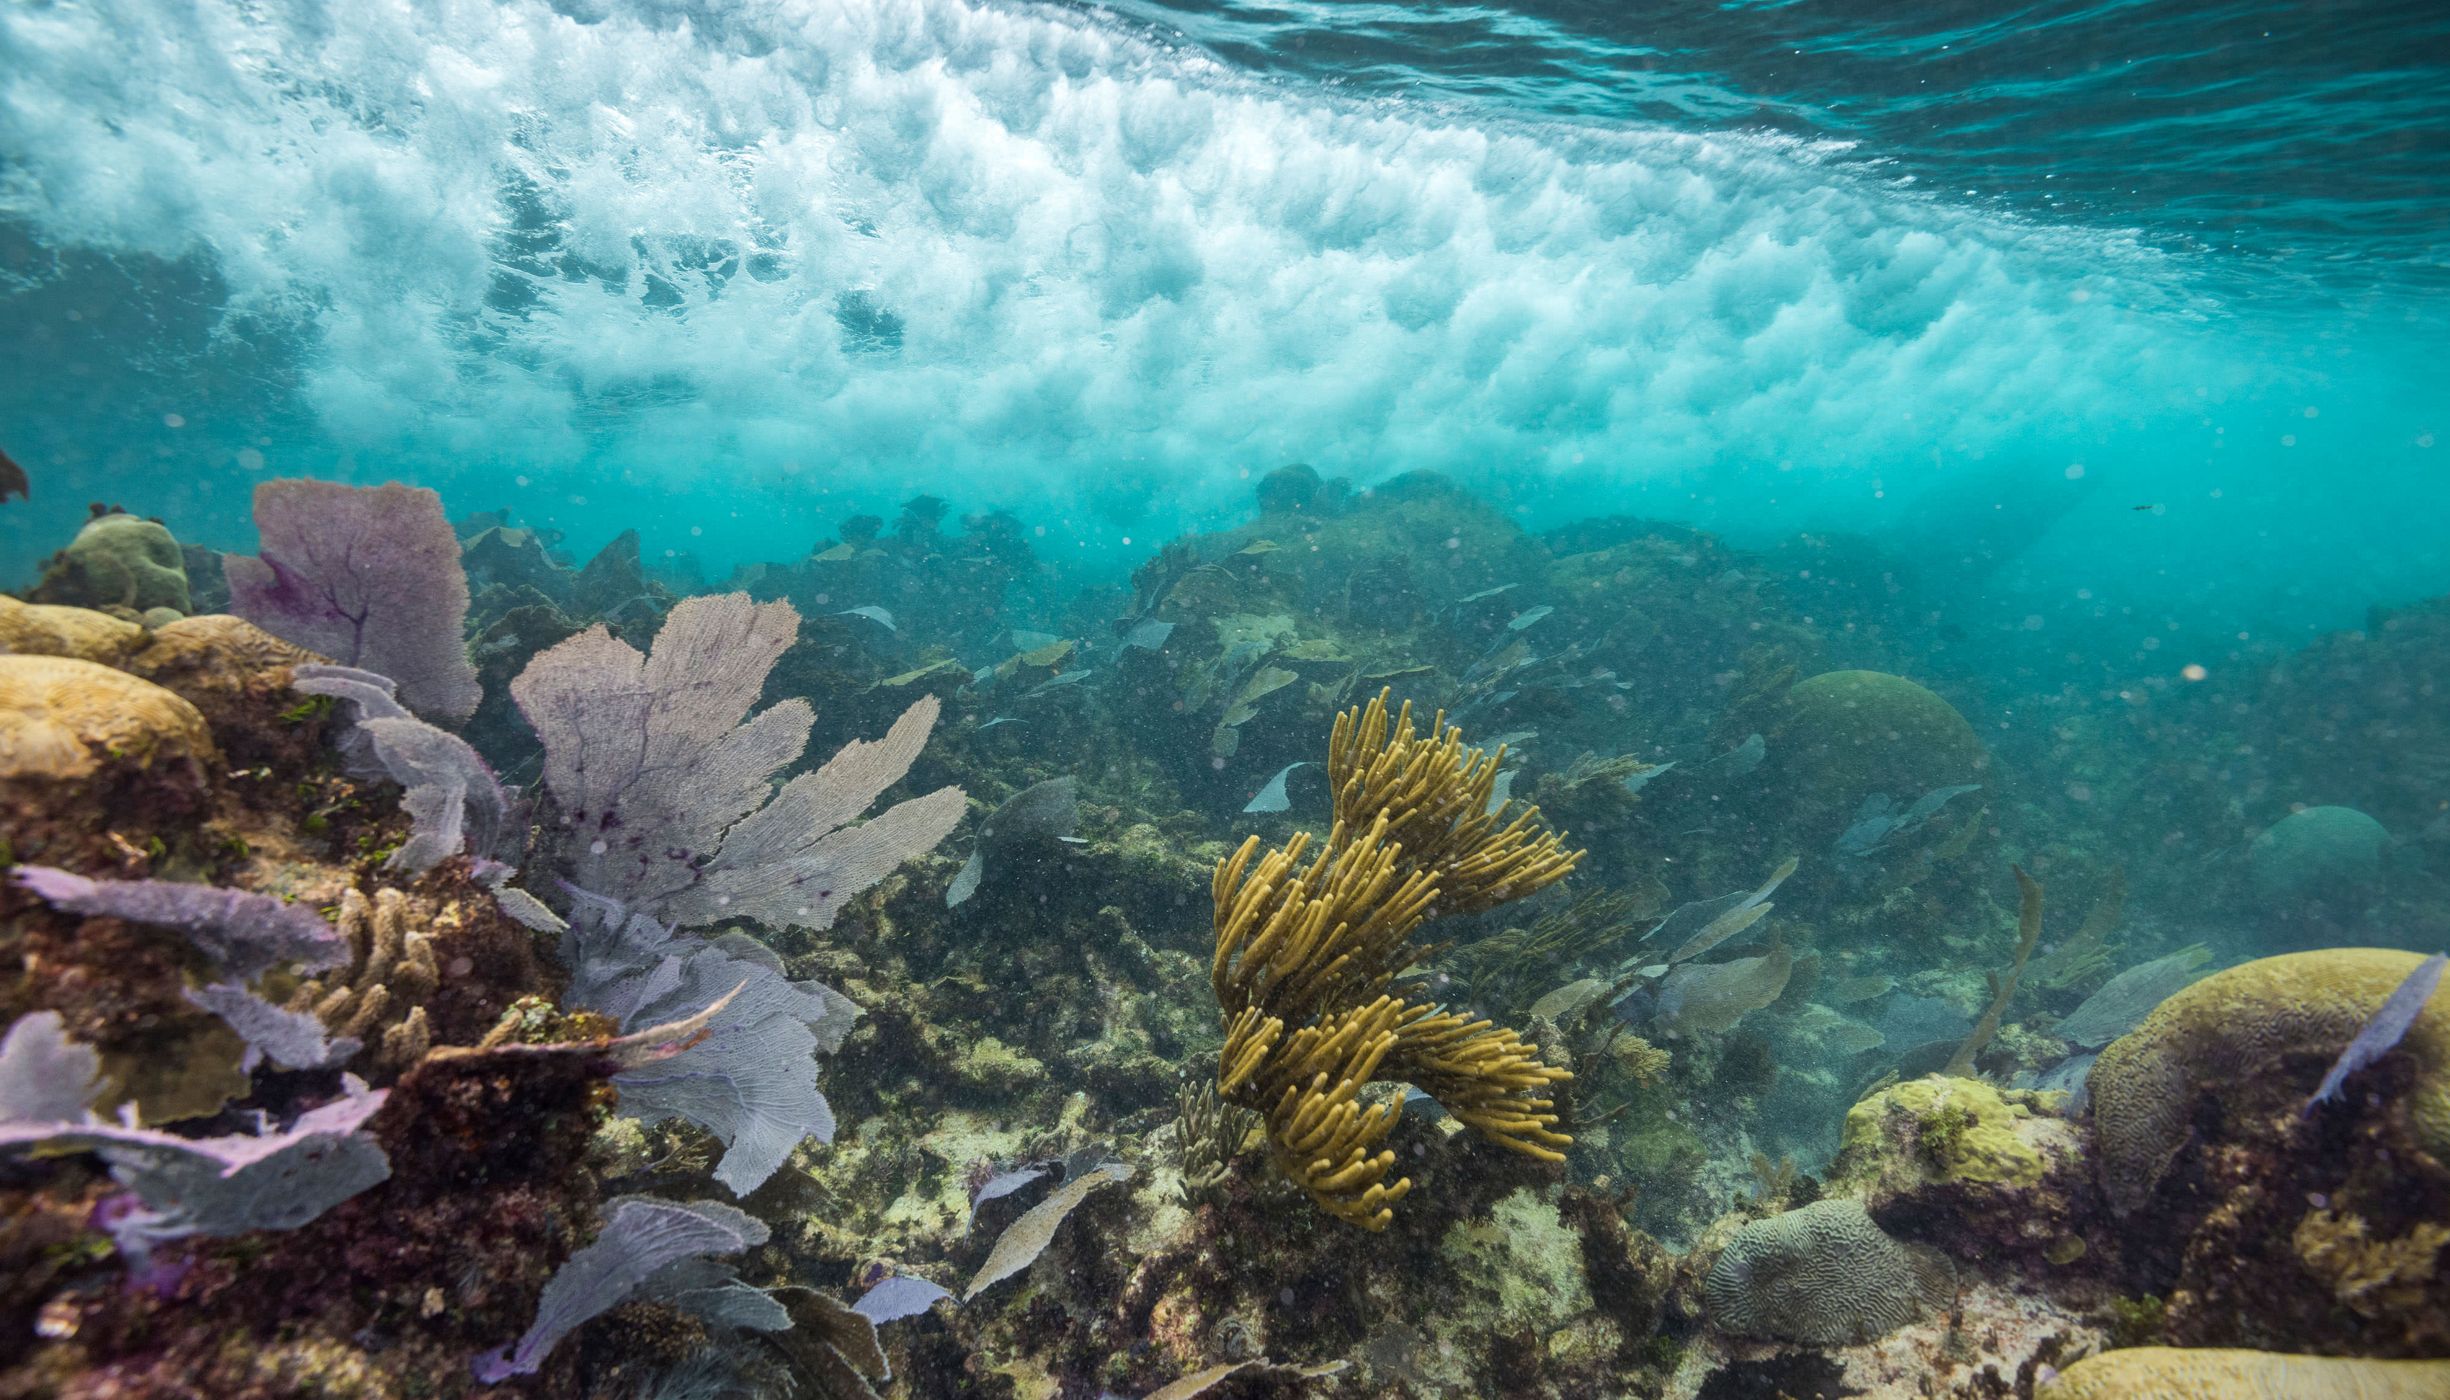 Vista submarina de un arrecife de coral cerca de México.